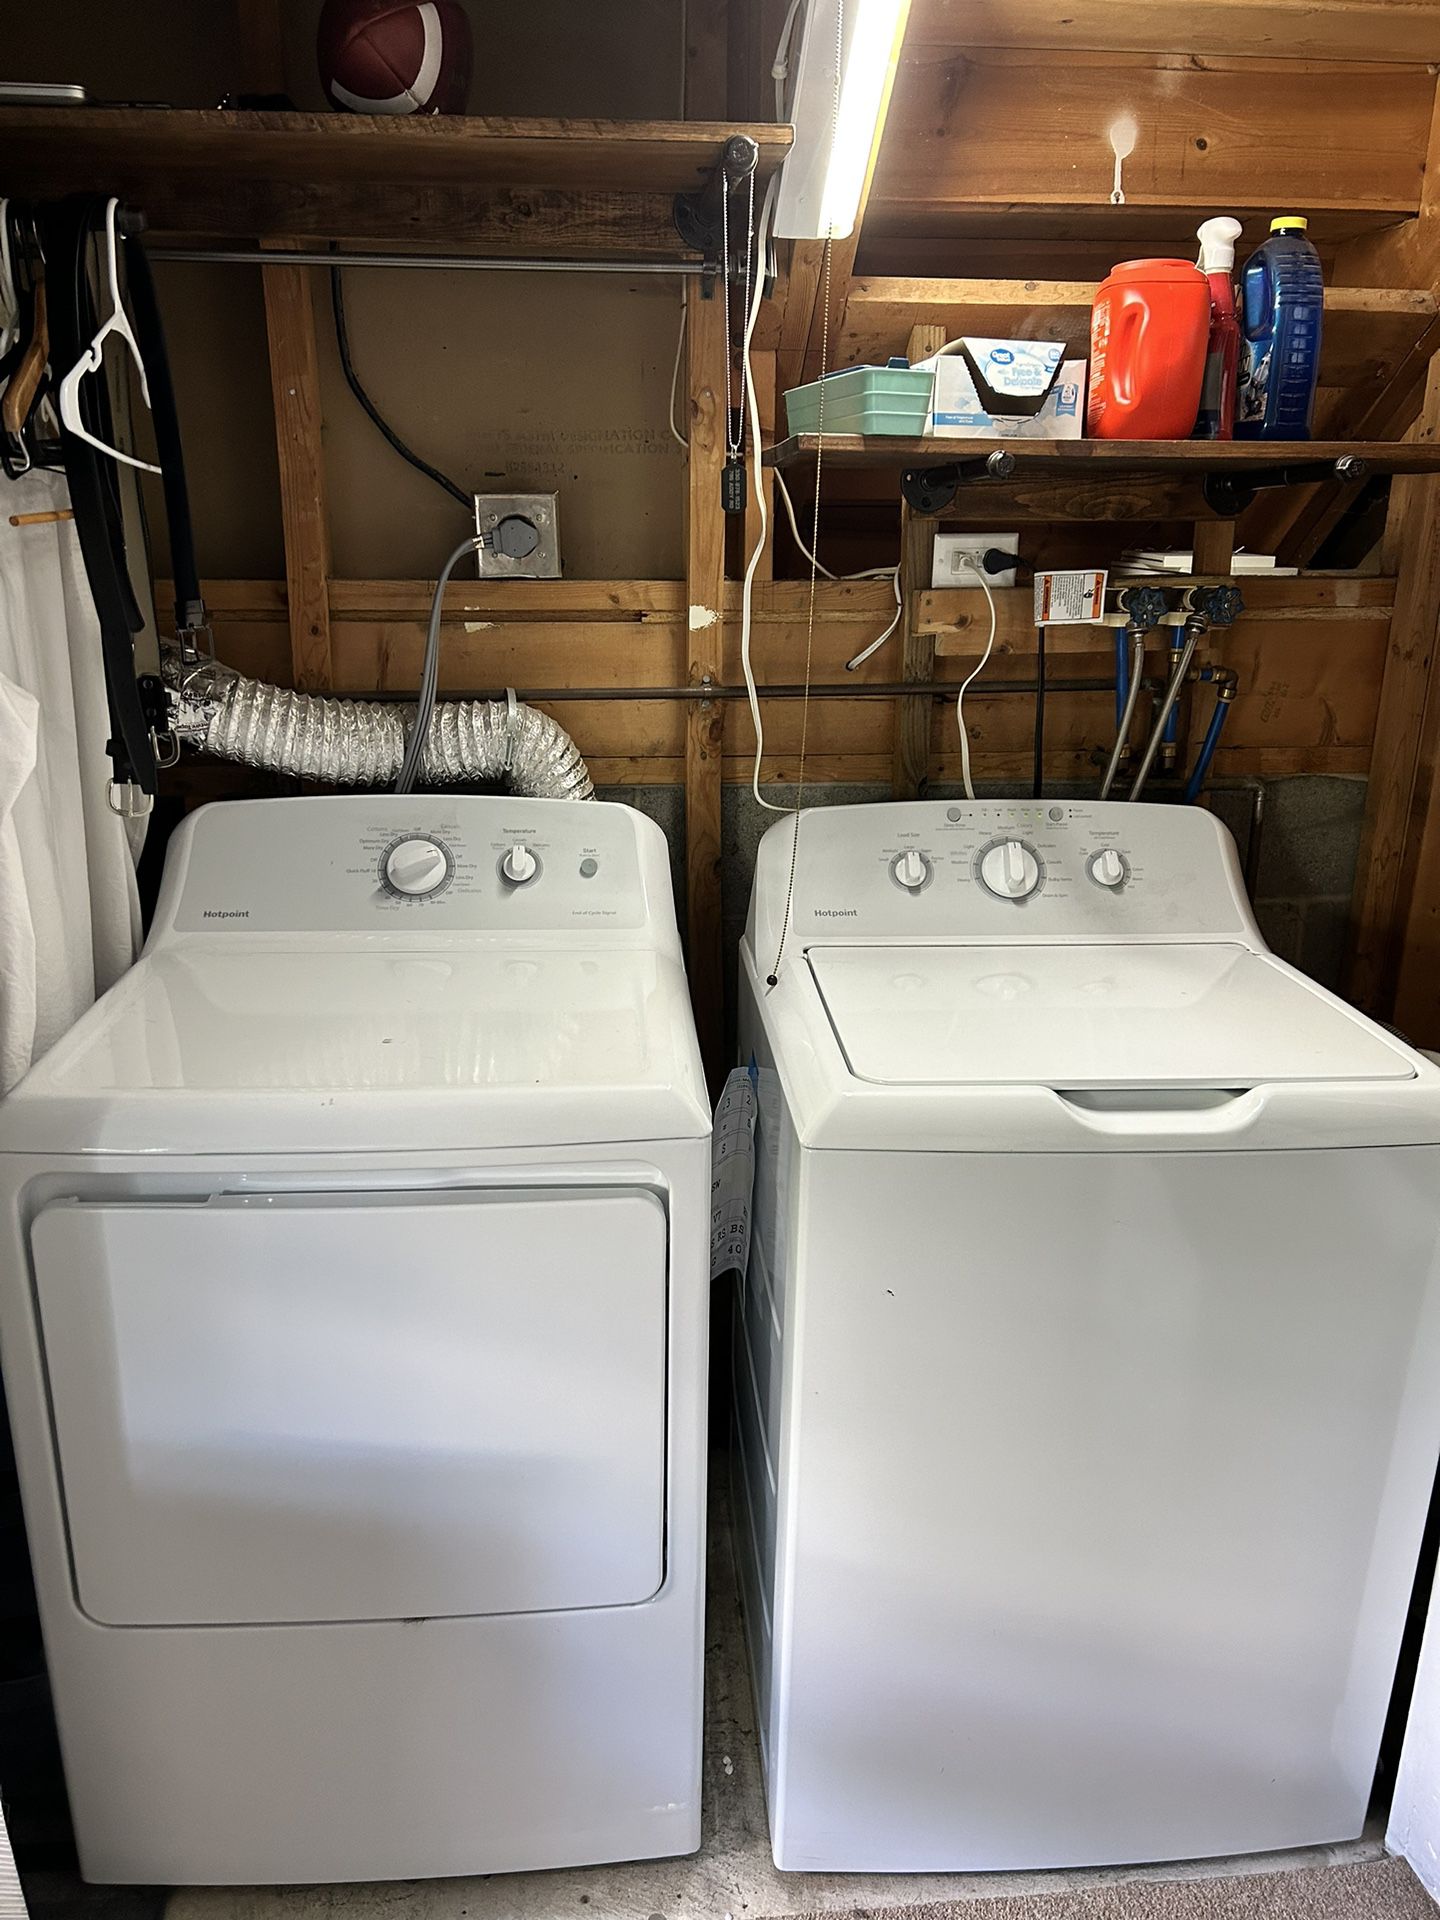 Washer/Dryer - Hotpoint